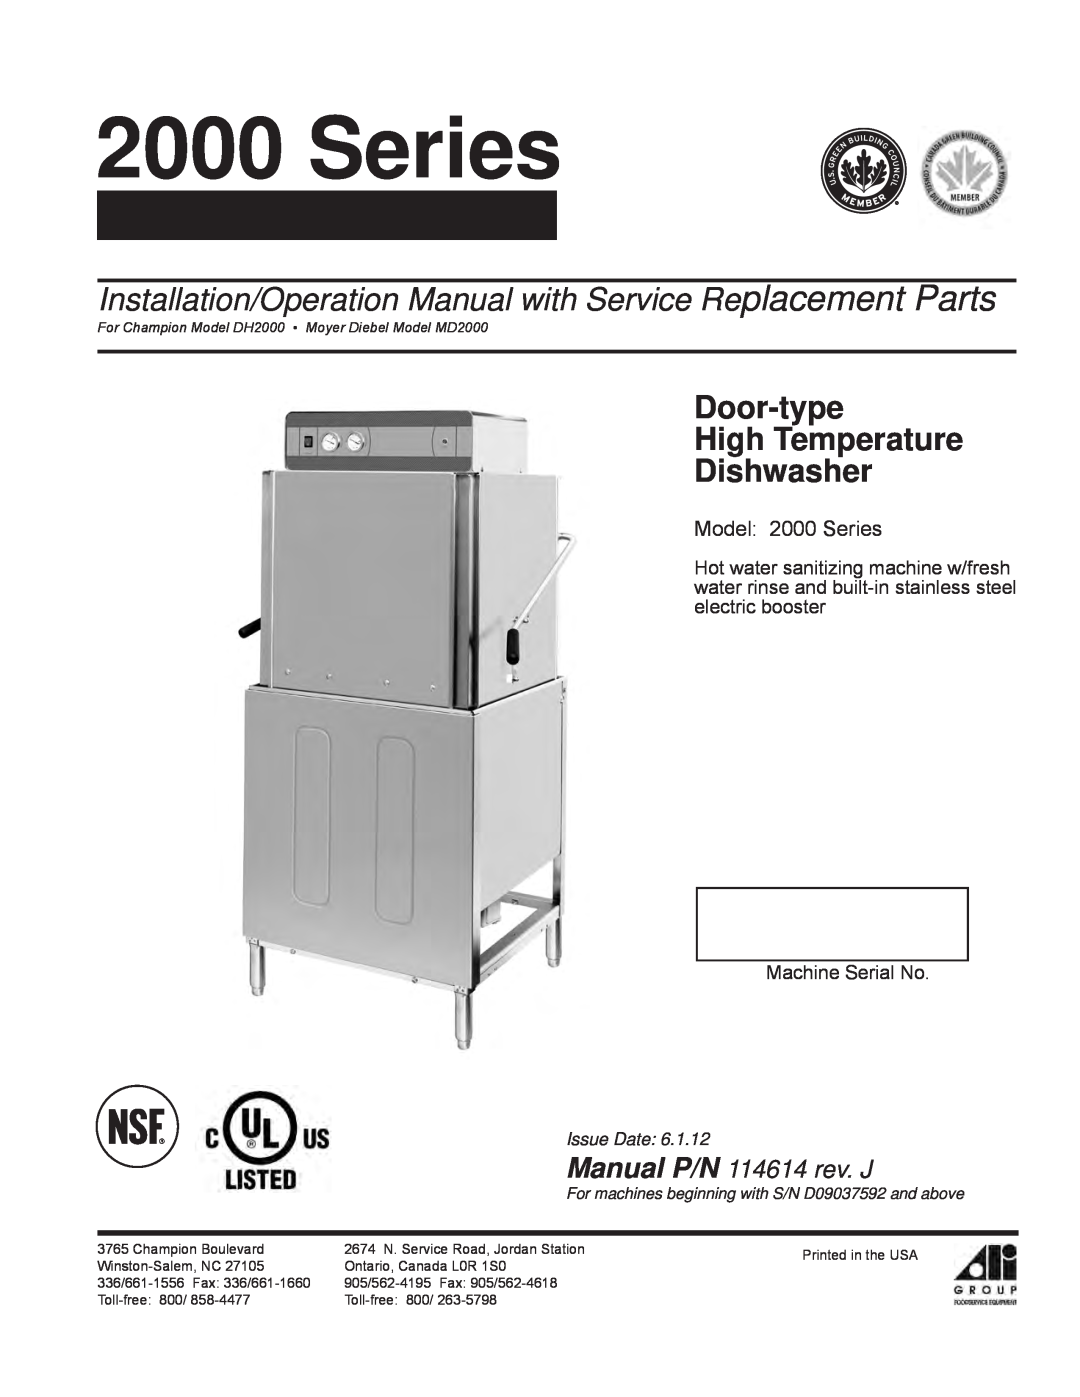 GE DH2000 operation manual Door-type High Temperature Dishwasher, Manual P/N 114614 rev. J, Model 2000 Series 